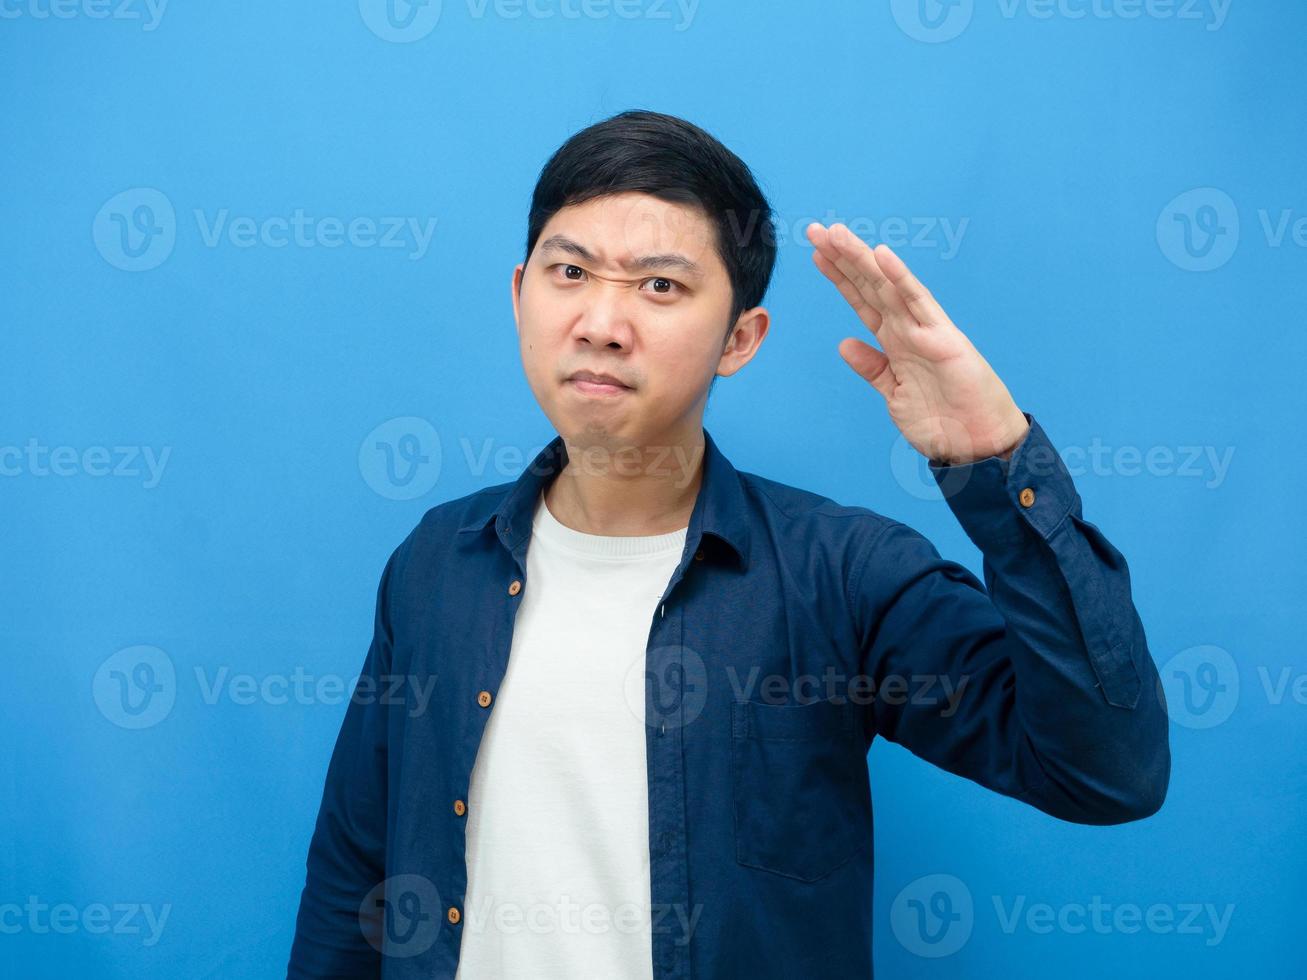 Mann zuversichtlich Gesicht Geste respektieren Hand wie Soldat blauer Hintergrund foto